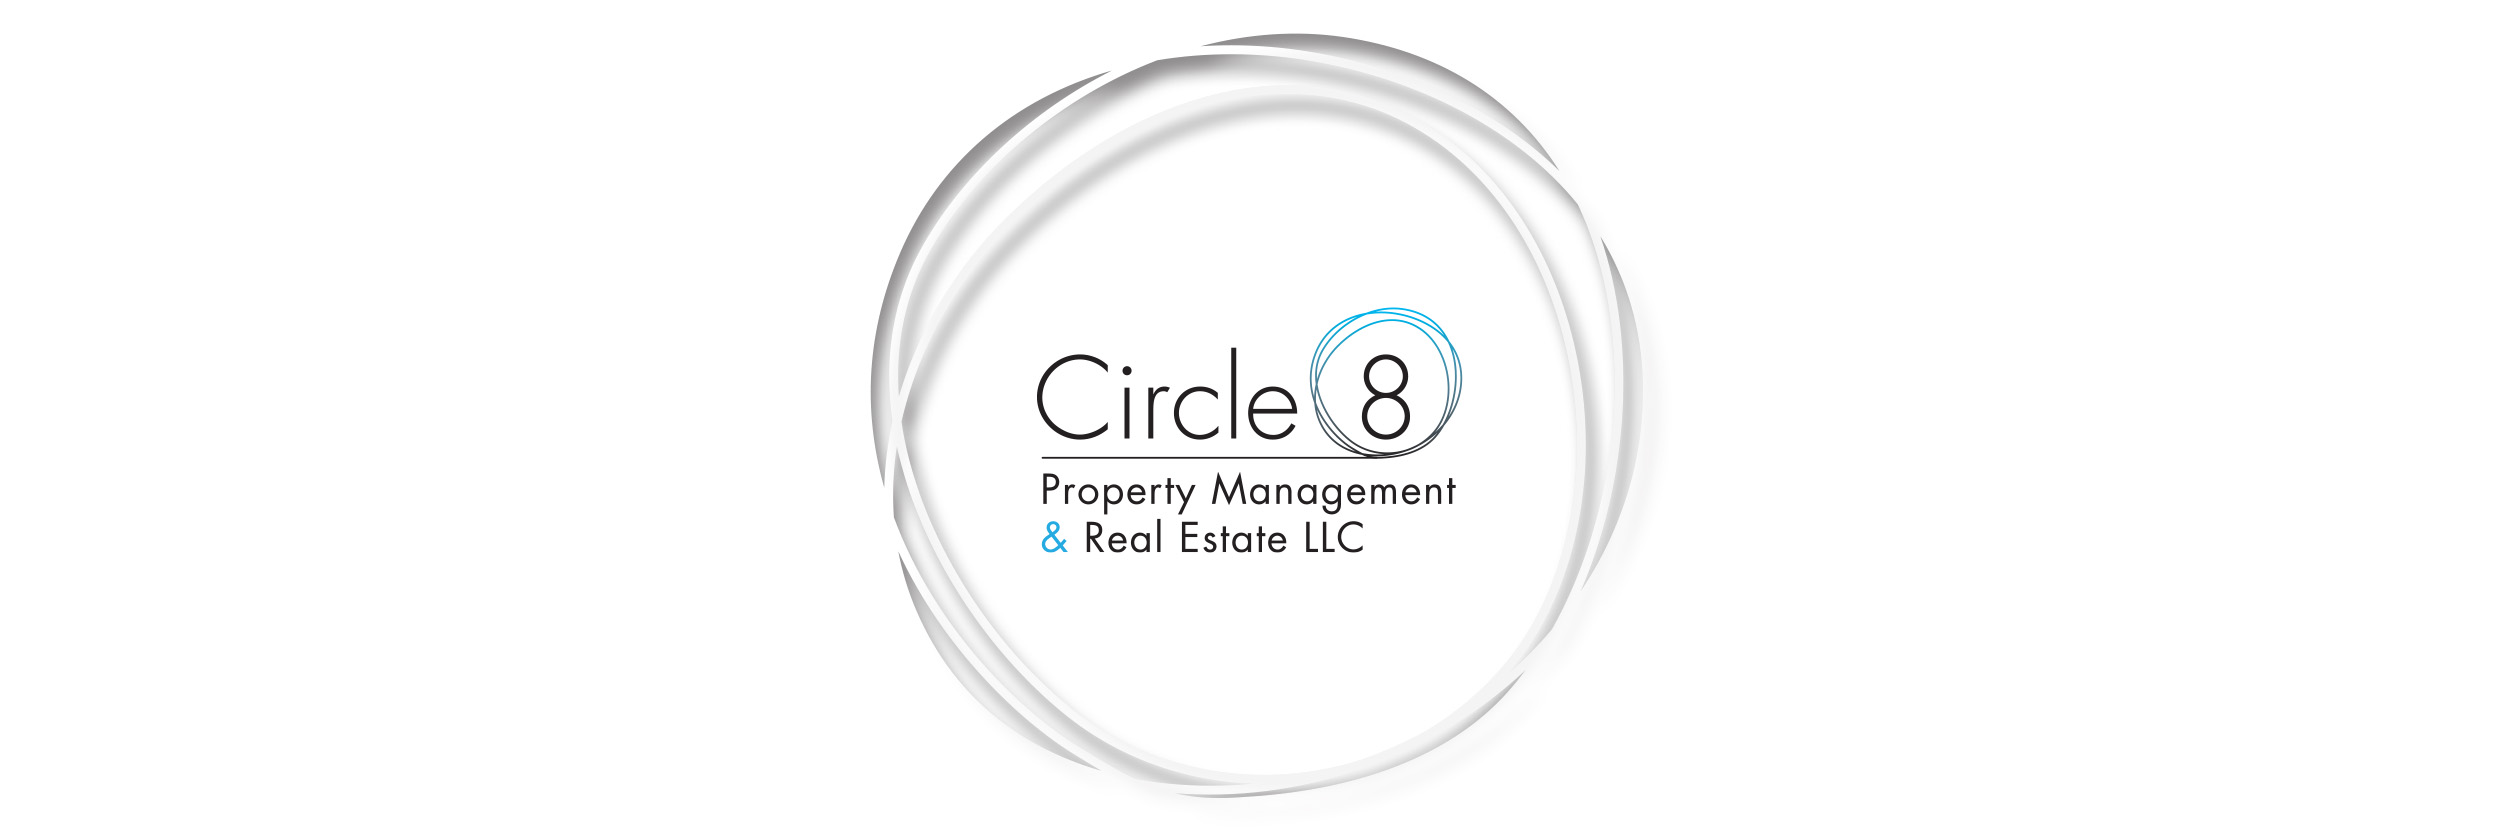 Circle 8 logo